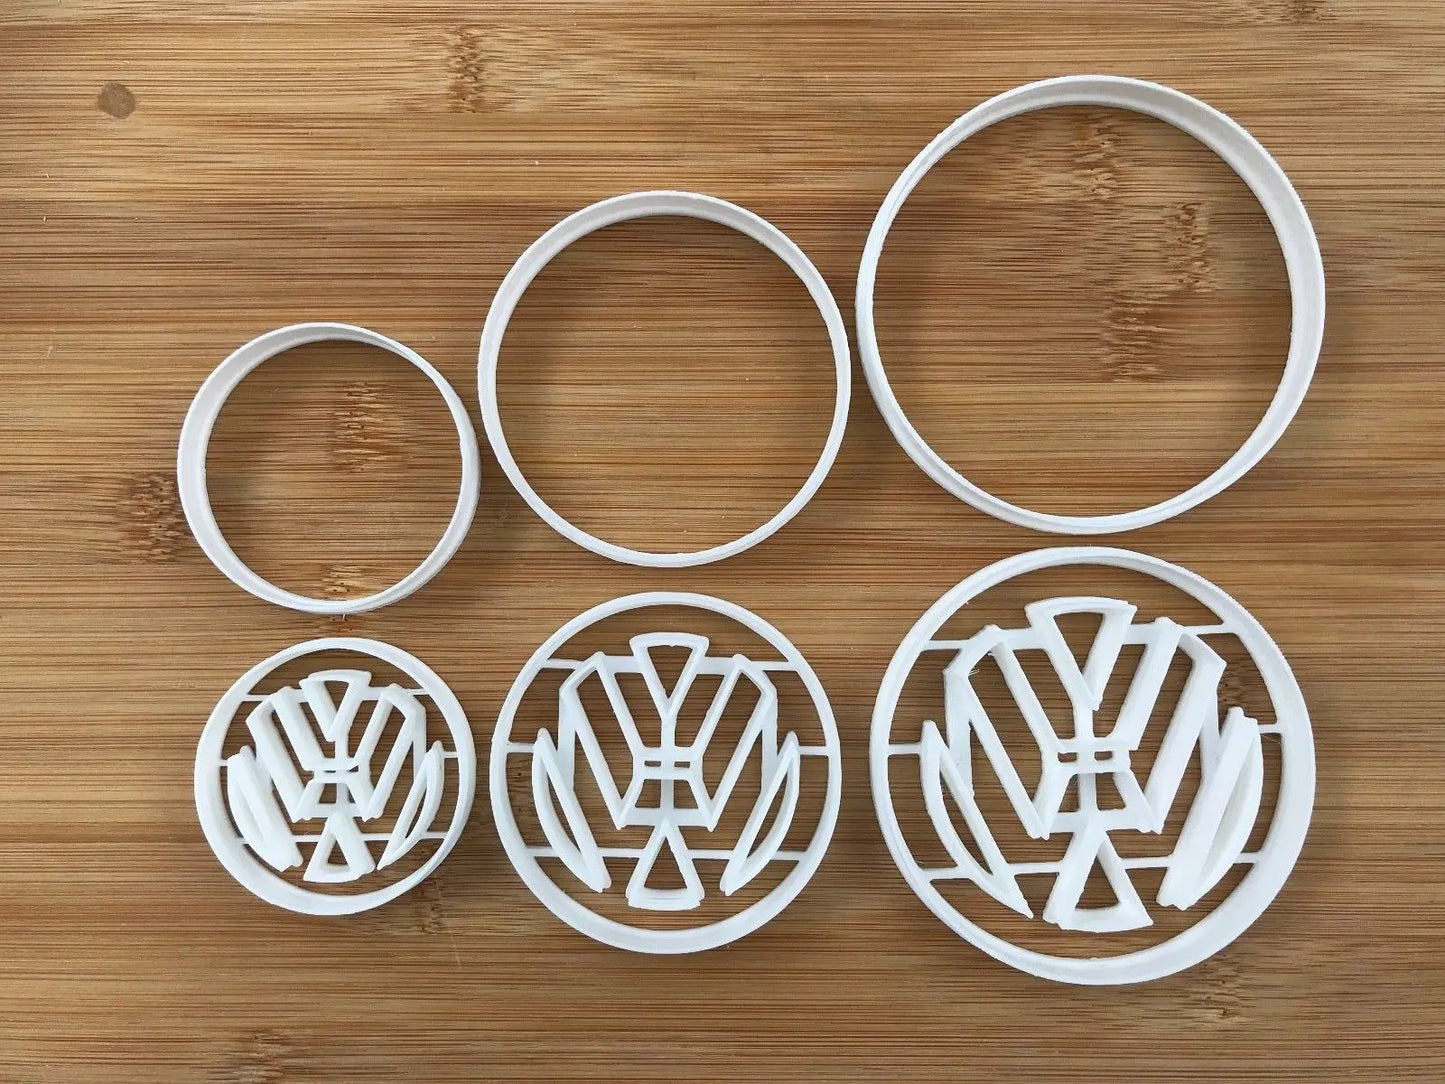 VW Automotive 005 Cookie Fondant Cutter Cake Decorating 5.5 cm 7.5 cm 9 cm UK MEG cookie cutters